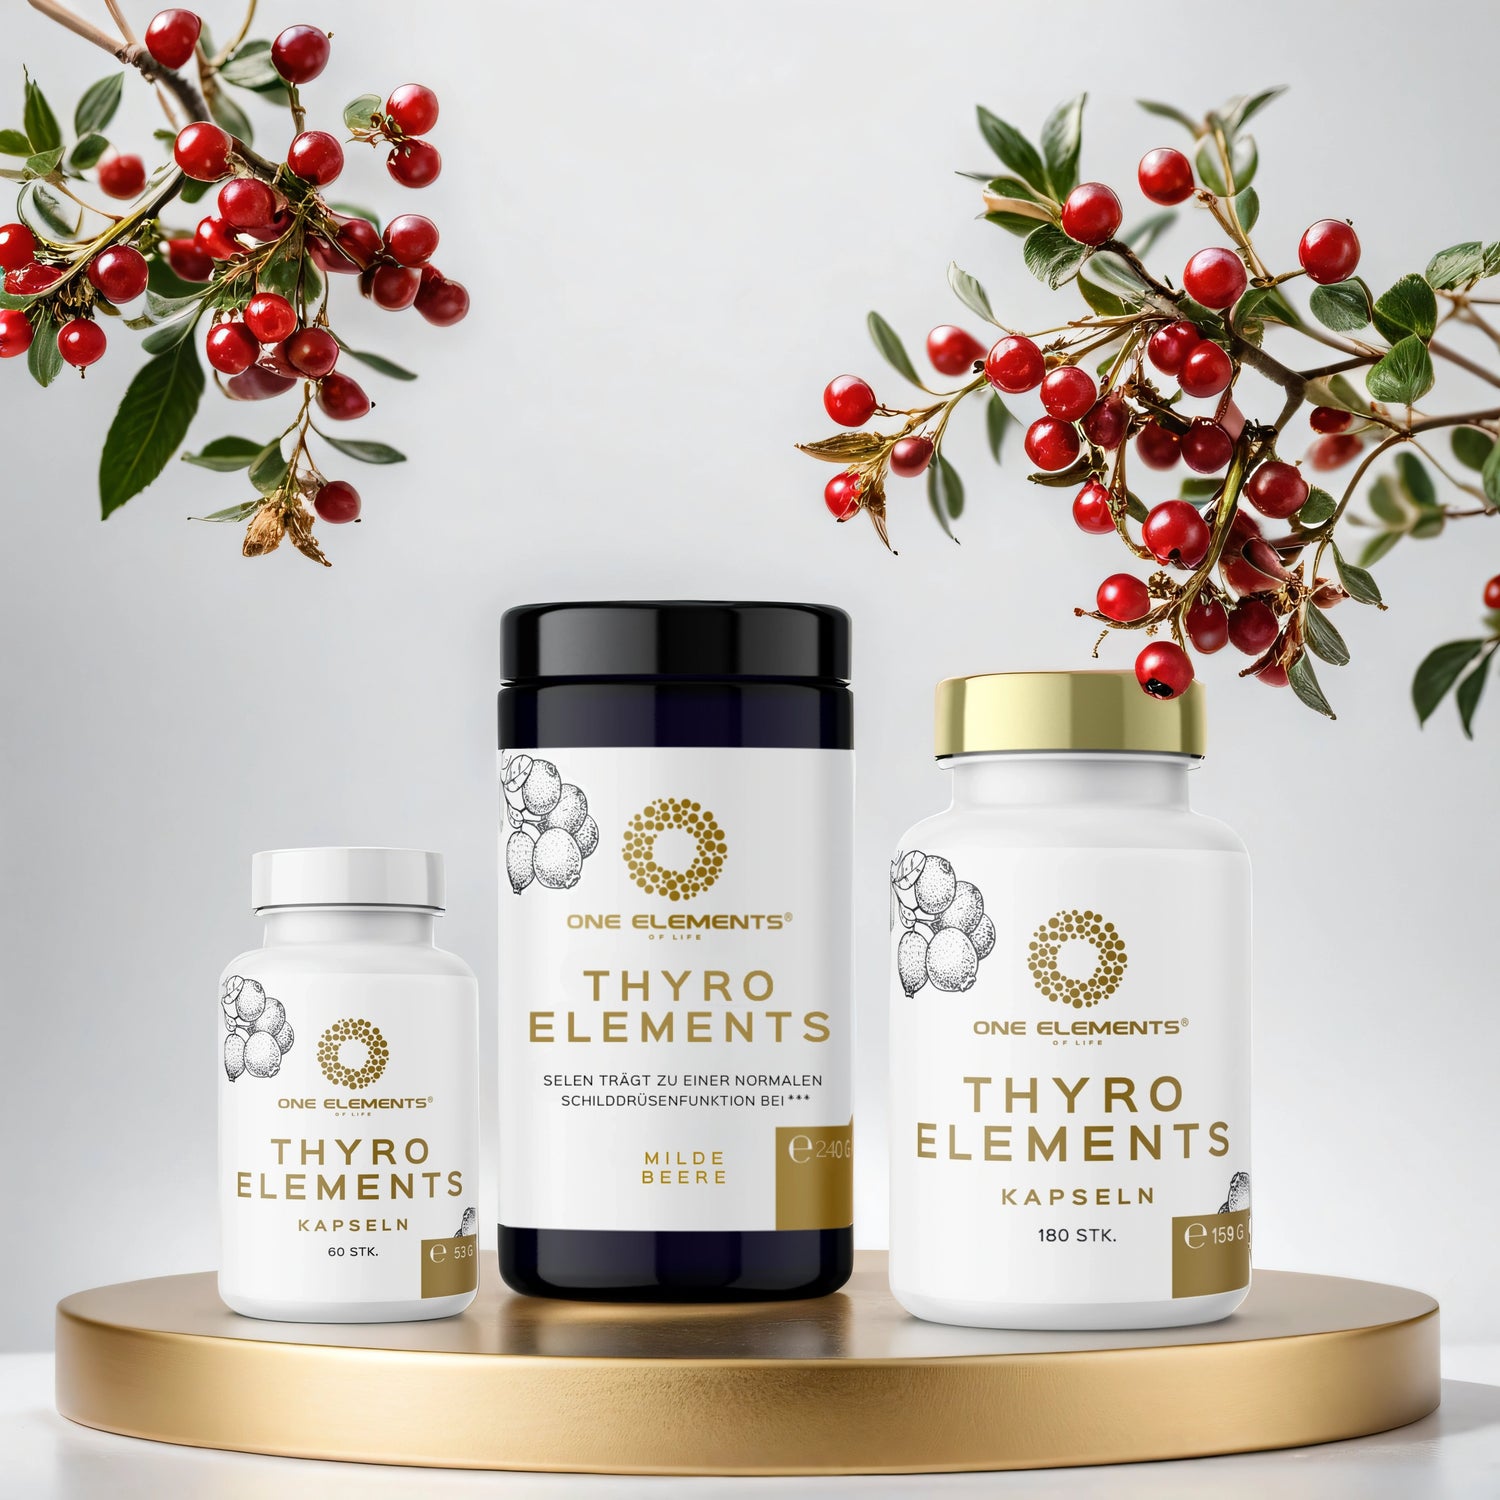 HASHIMOTO ELEMENTS® THYRO ELEMENTS Sortiment mit Kapseln und Pulver auf goldenem Podest, umgeben von roten Beeren, für Schilddrüsengesundheit.